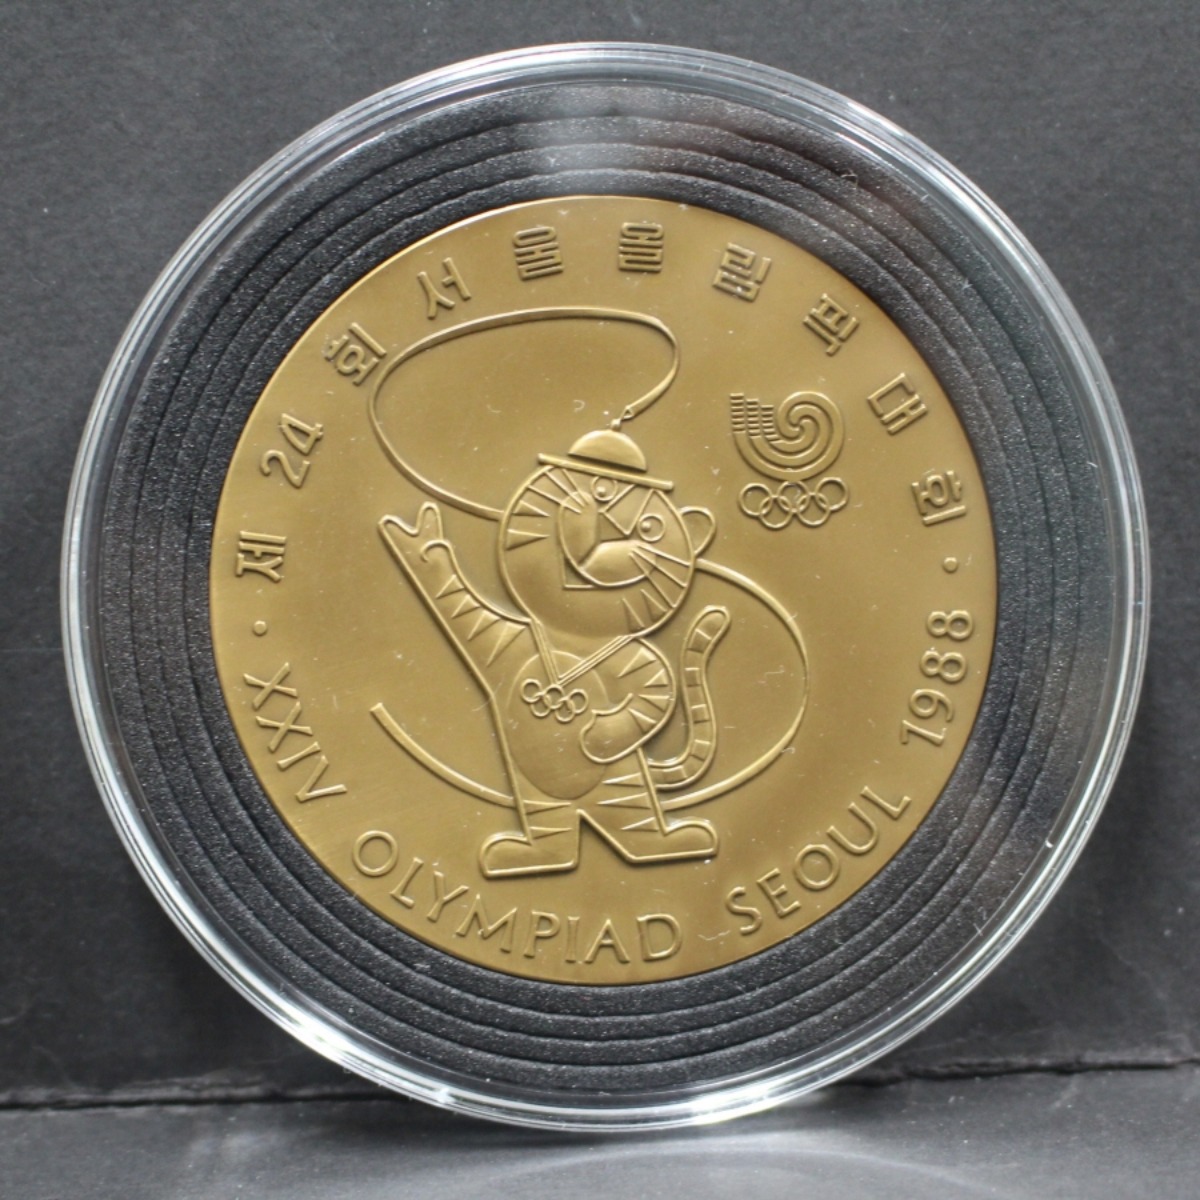 한국조폐공사 1988년 서울 올림픽 공식 기념 호돌이 동메달 (상태 최상급)